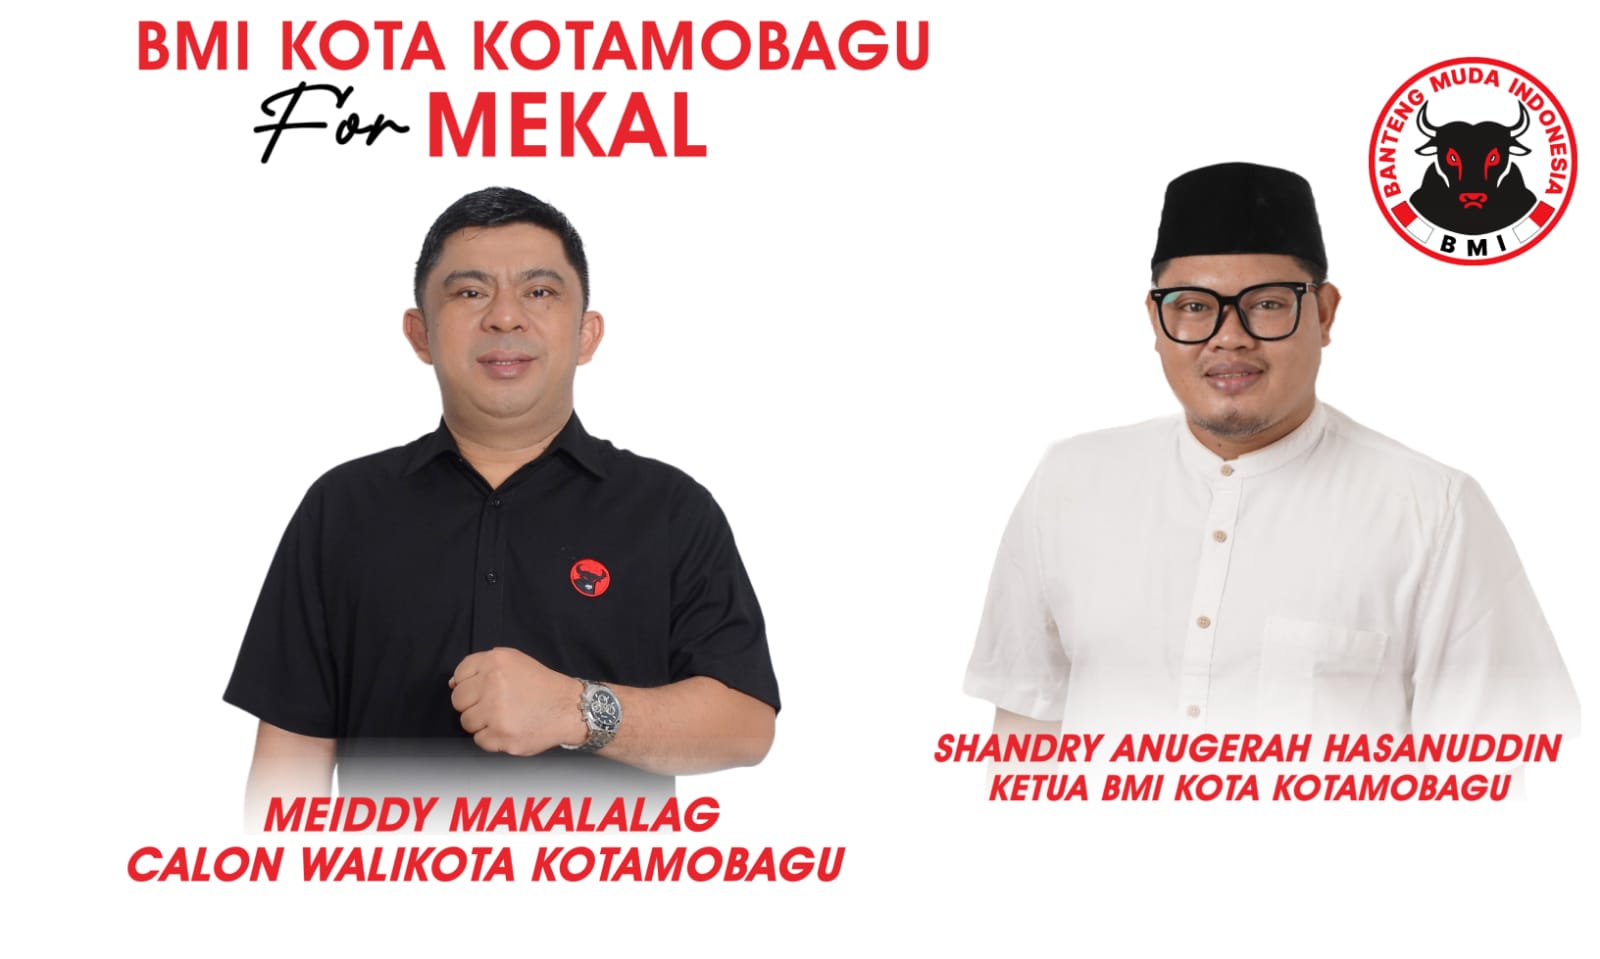 Dukung Penuh Meiddy Makalalag Calon Wali Kota, Ketua BMI Kotamobagu: Torang Main Sampai Menang